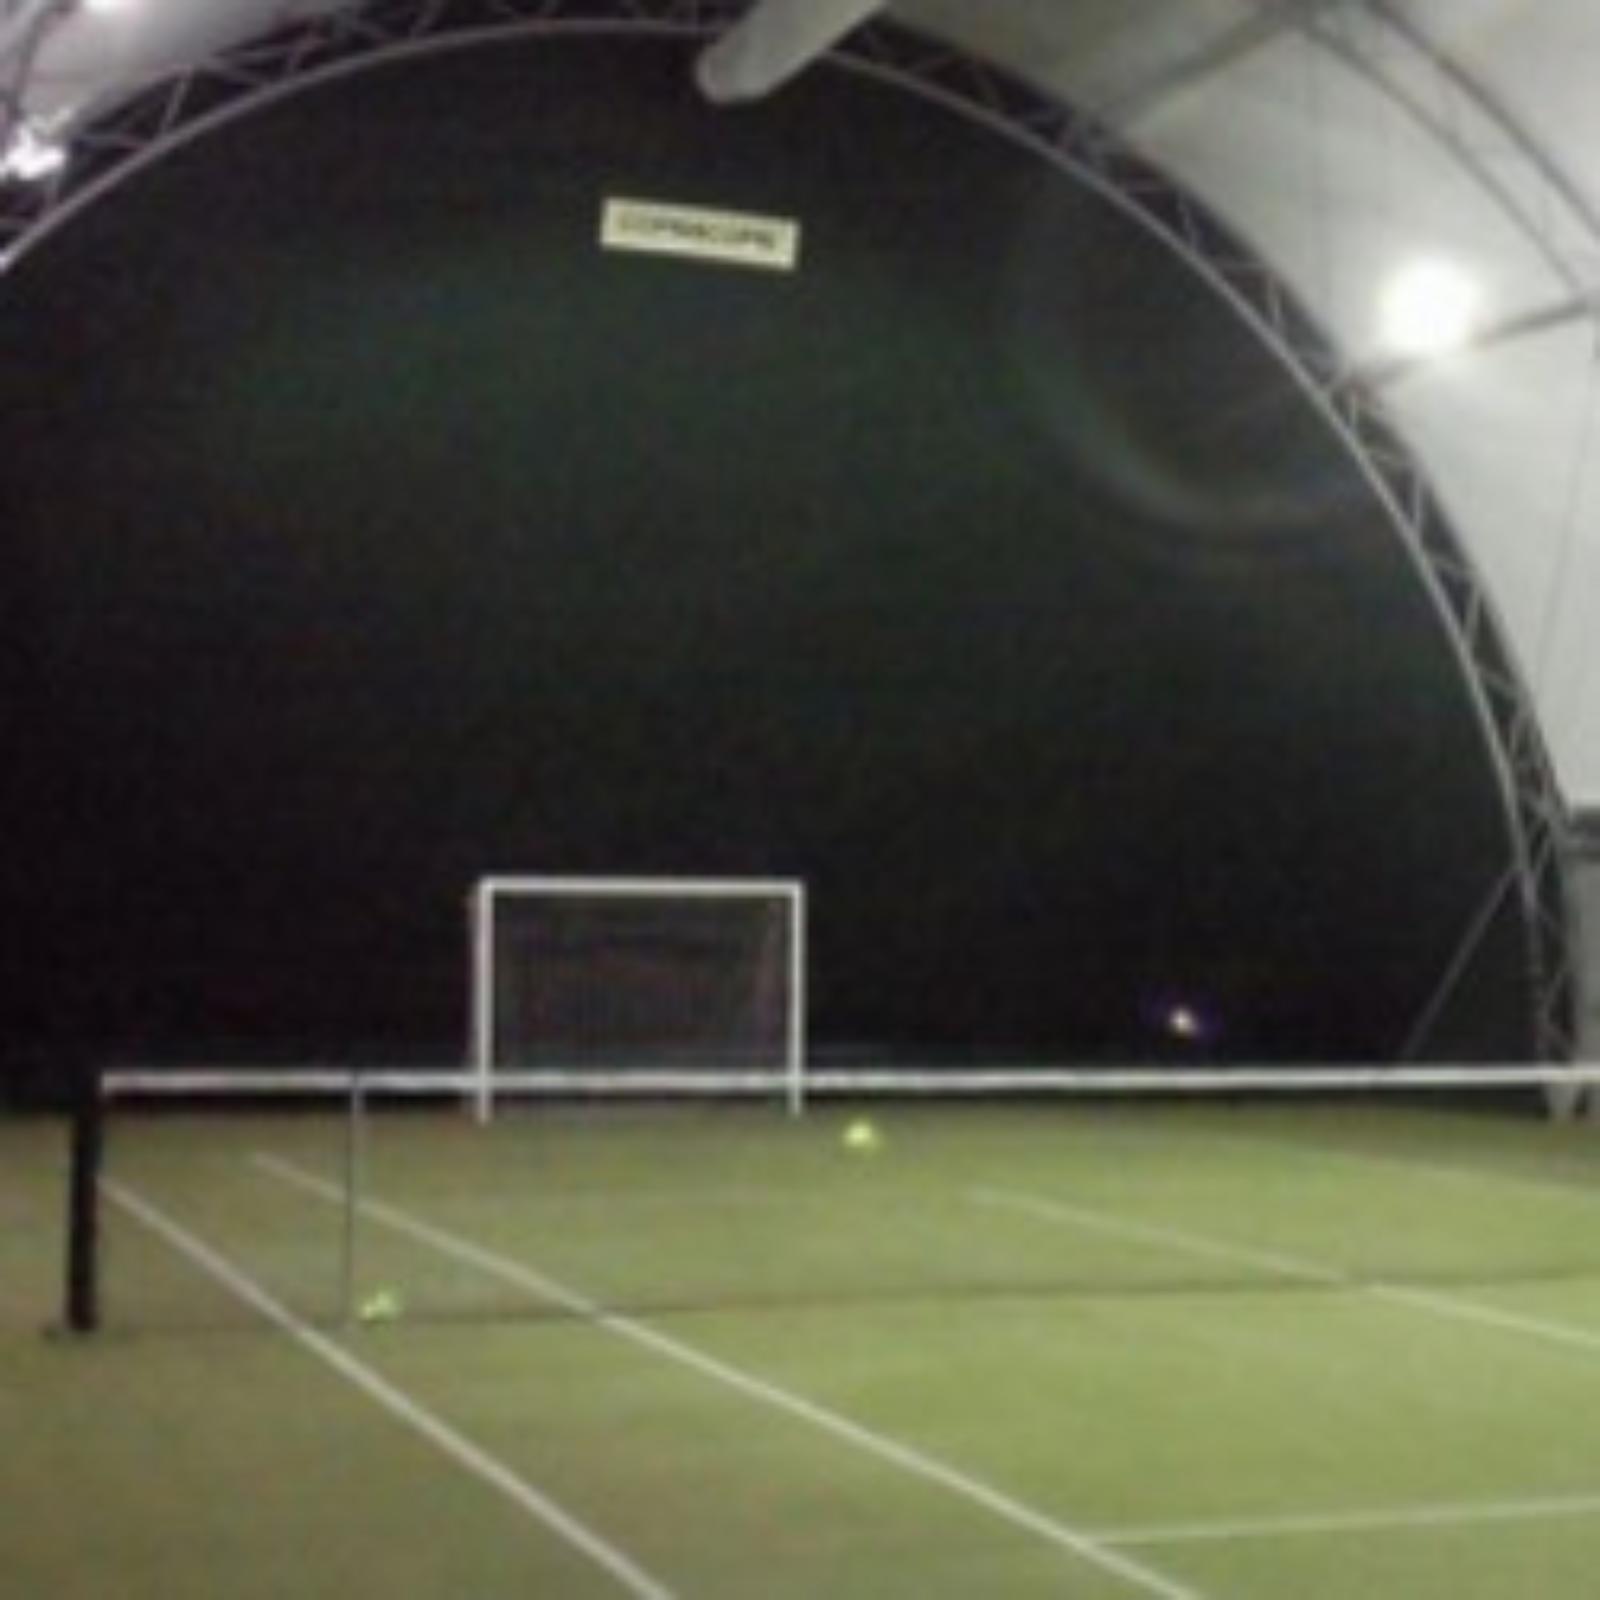 Tennis club Budrio